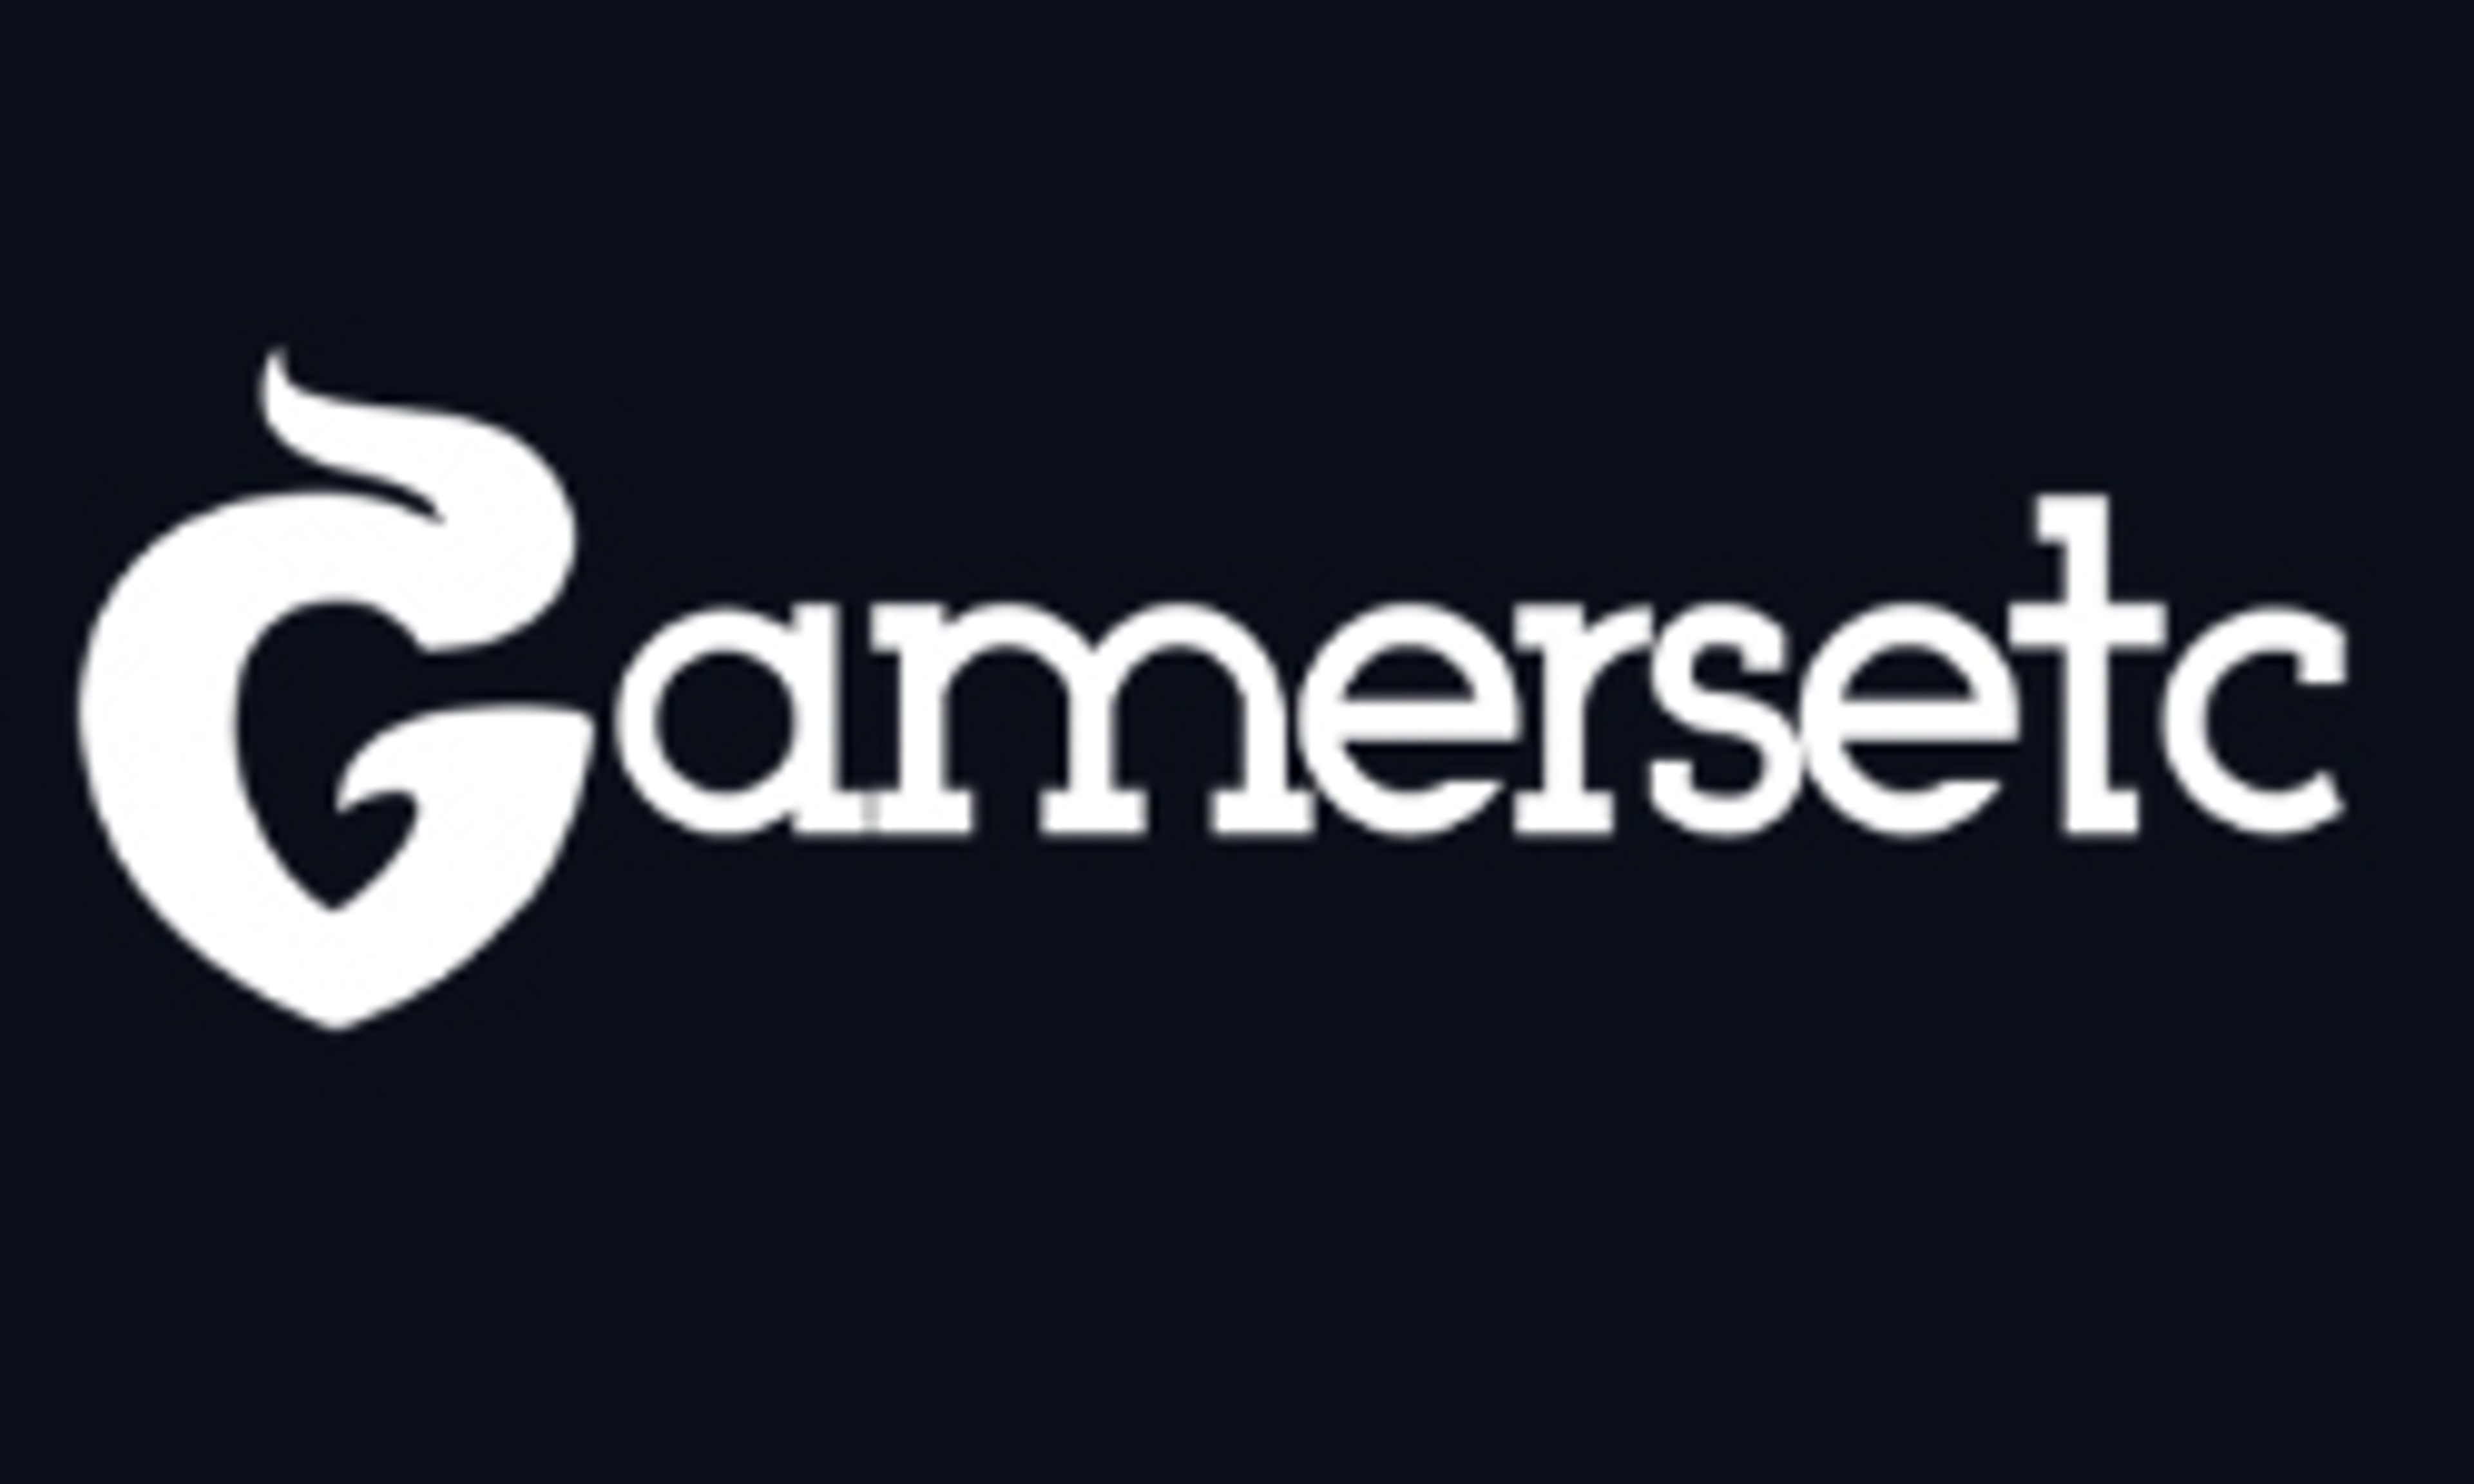 gamersetc.com